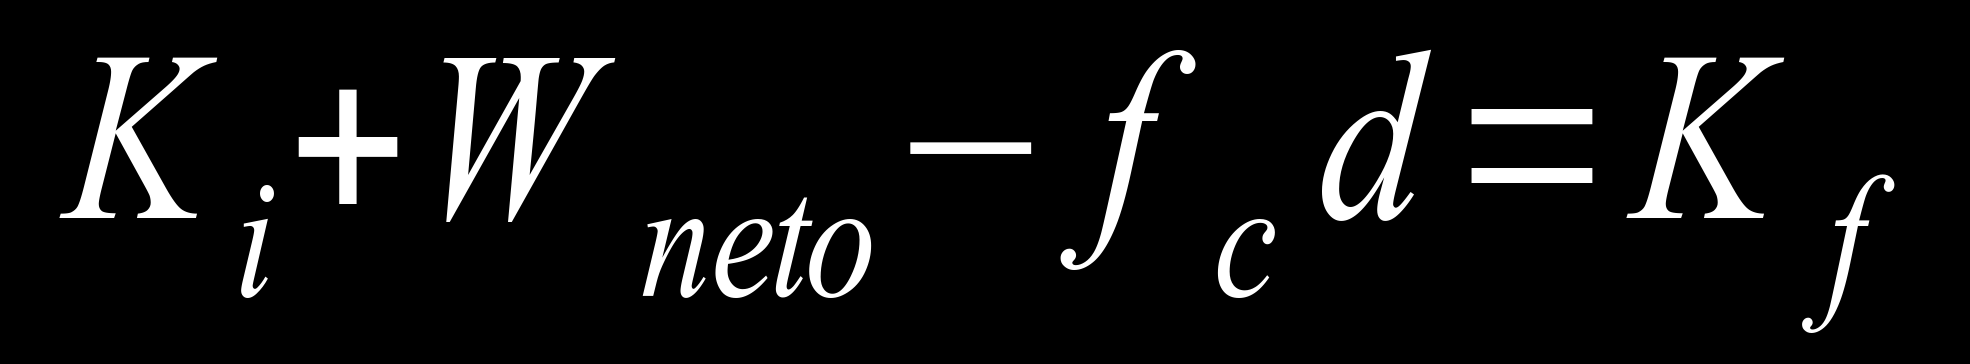 Ejemplo Un bloque de 6 kg es jalado hacia la derecha en una superficie con fricción con una fuerza horizontal constante de 12 N. El coeficiente de fricción es 0.15.